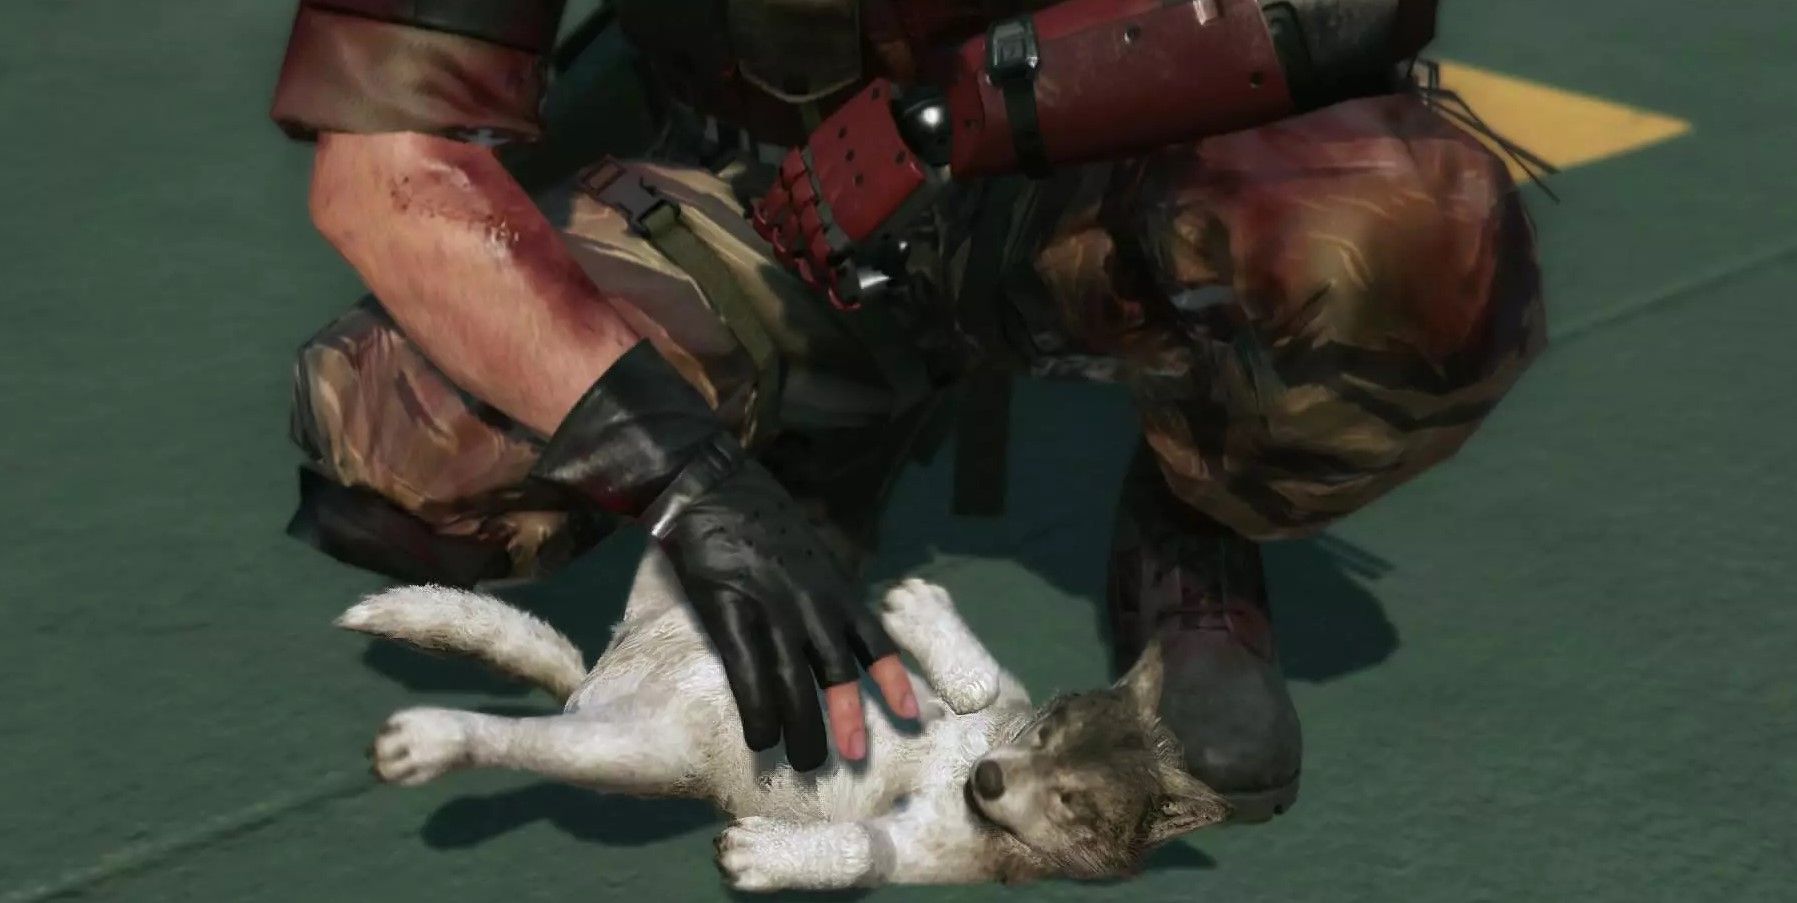 Les images mettent en évidence les jeux qui permettent aux joueurs de caresser des chiens